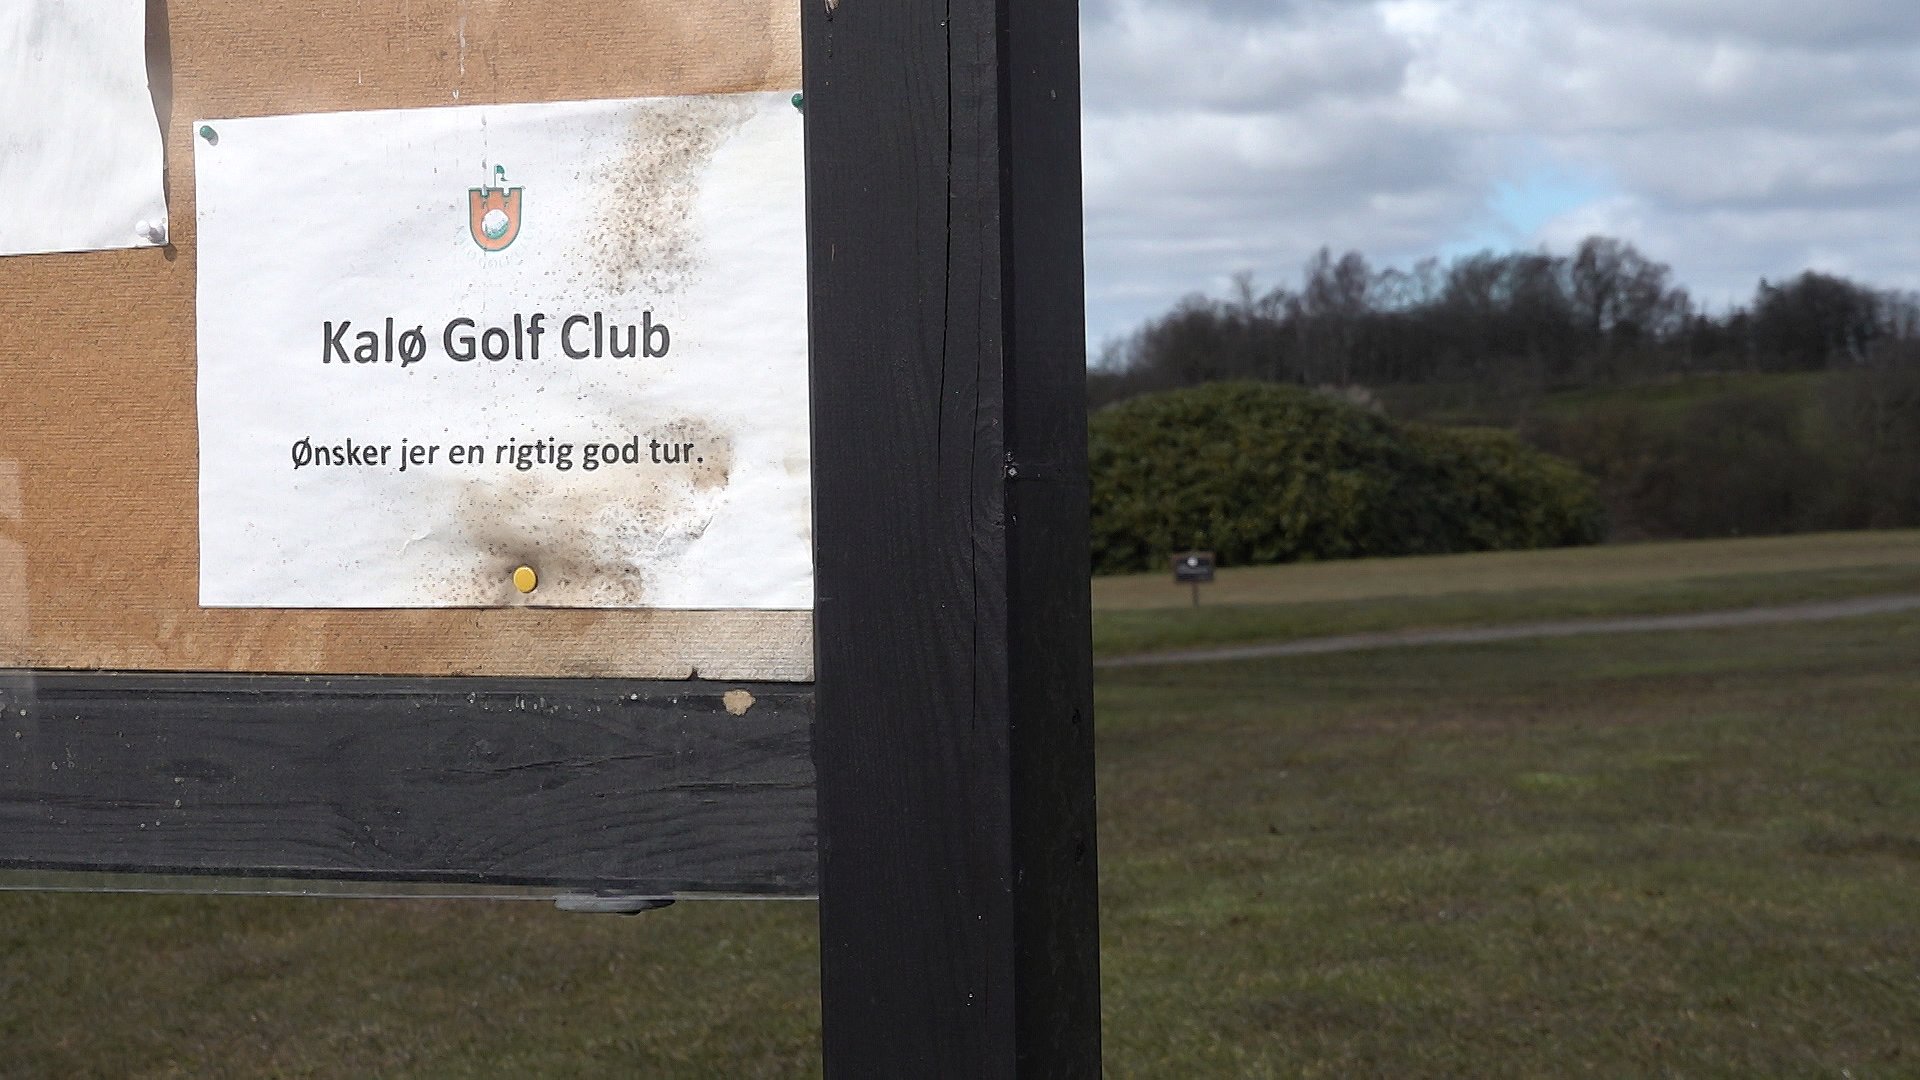 Golfbaner selvom vi skal begrænse vores færden uden for hjemmet | TV2 Østjylland